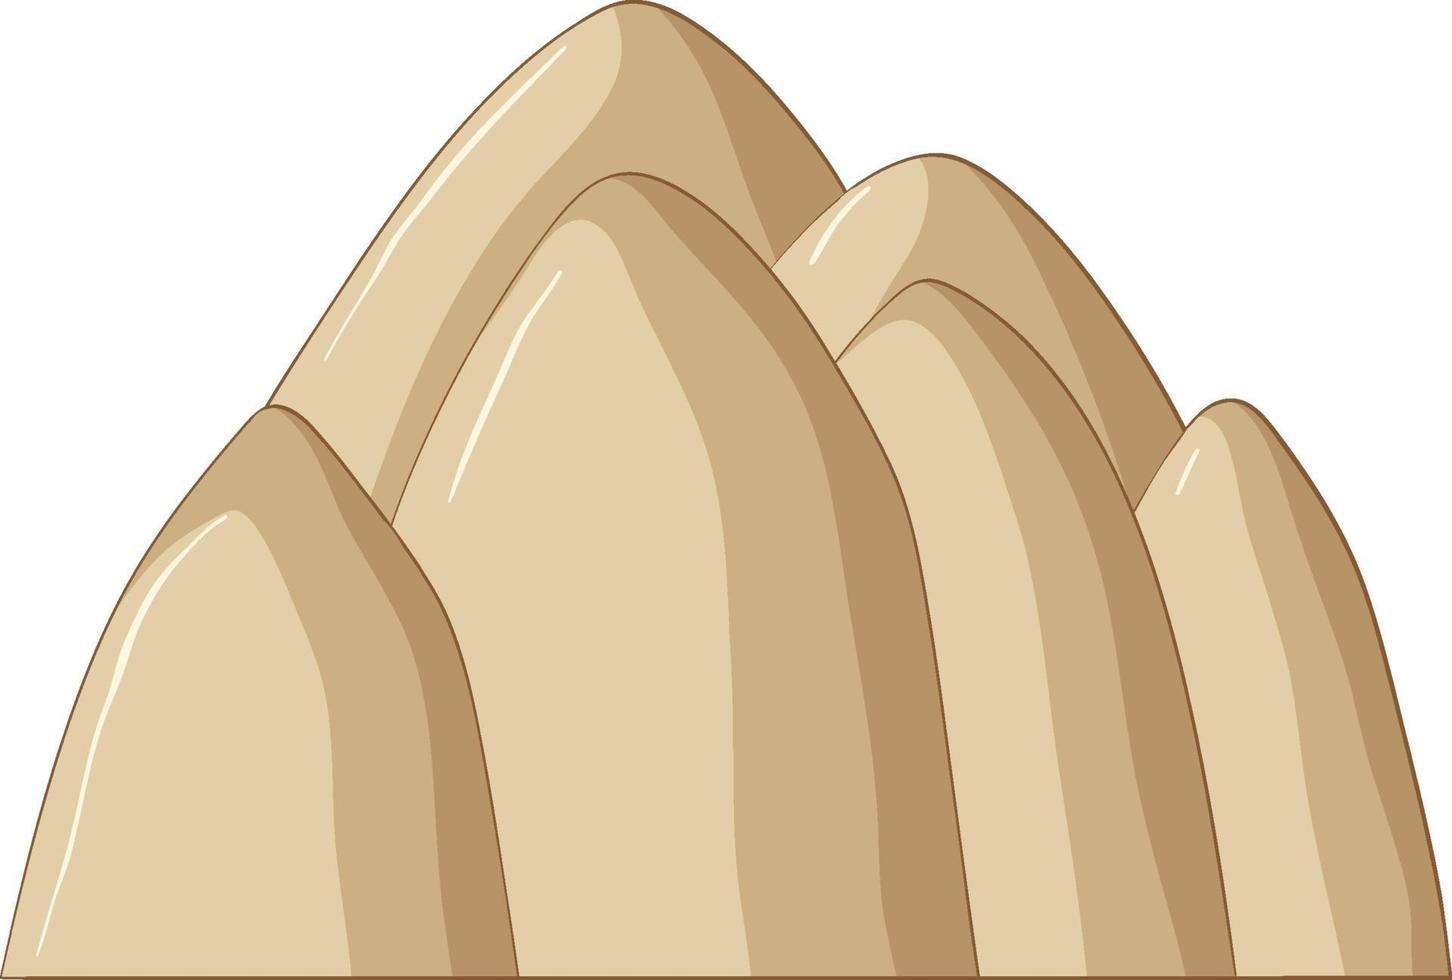 montagna di sabbia in stile cartone animato vettore